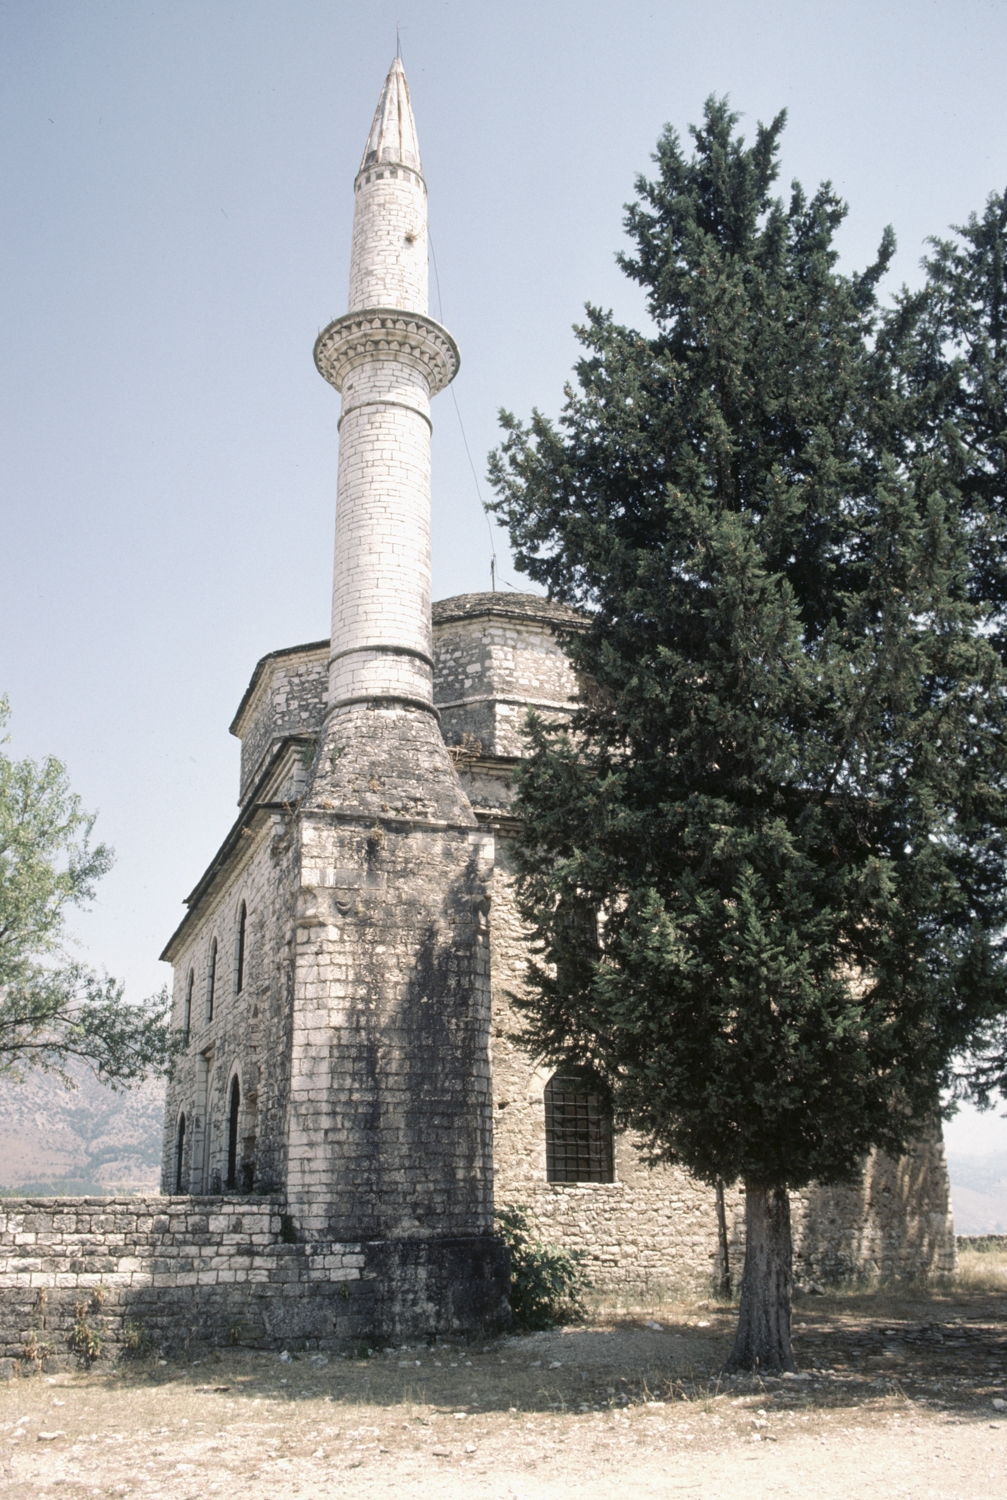 Western corner view, with minaret